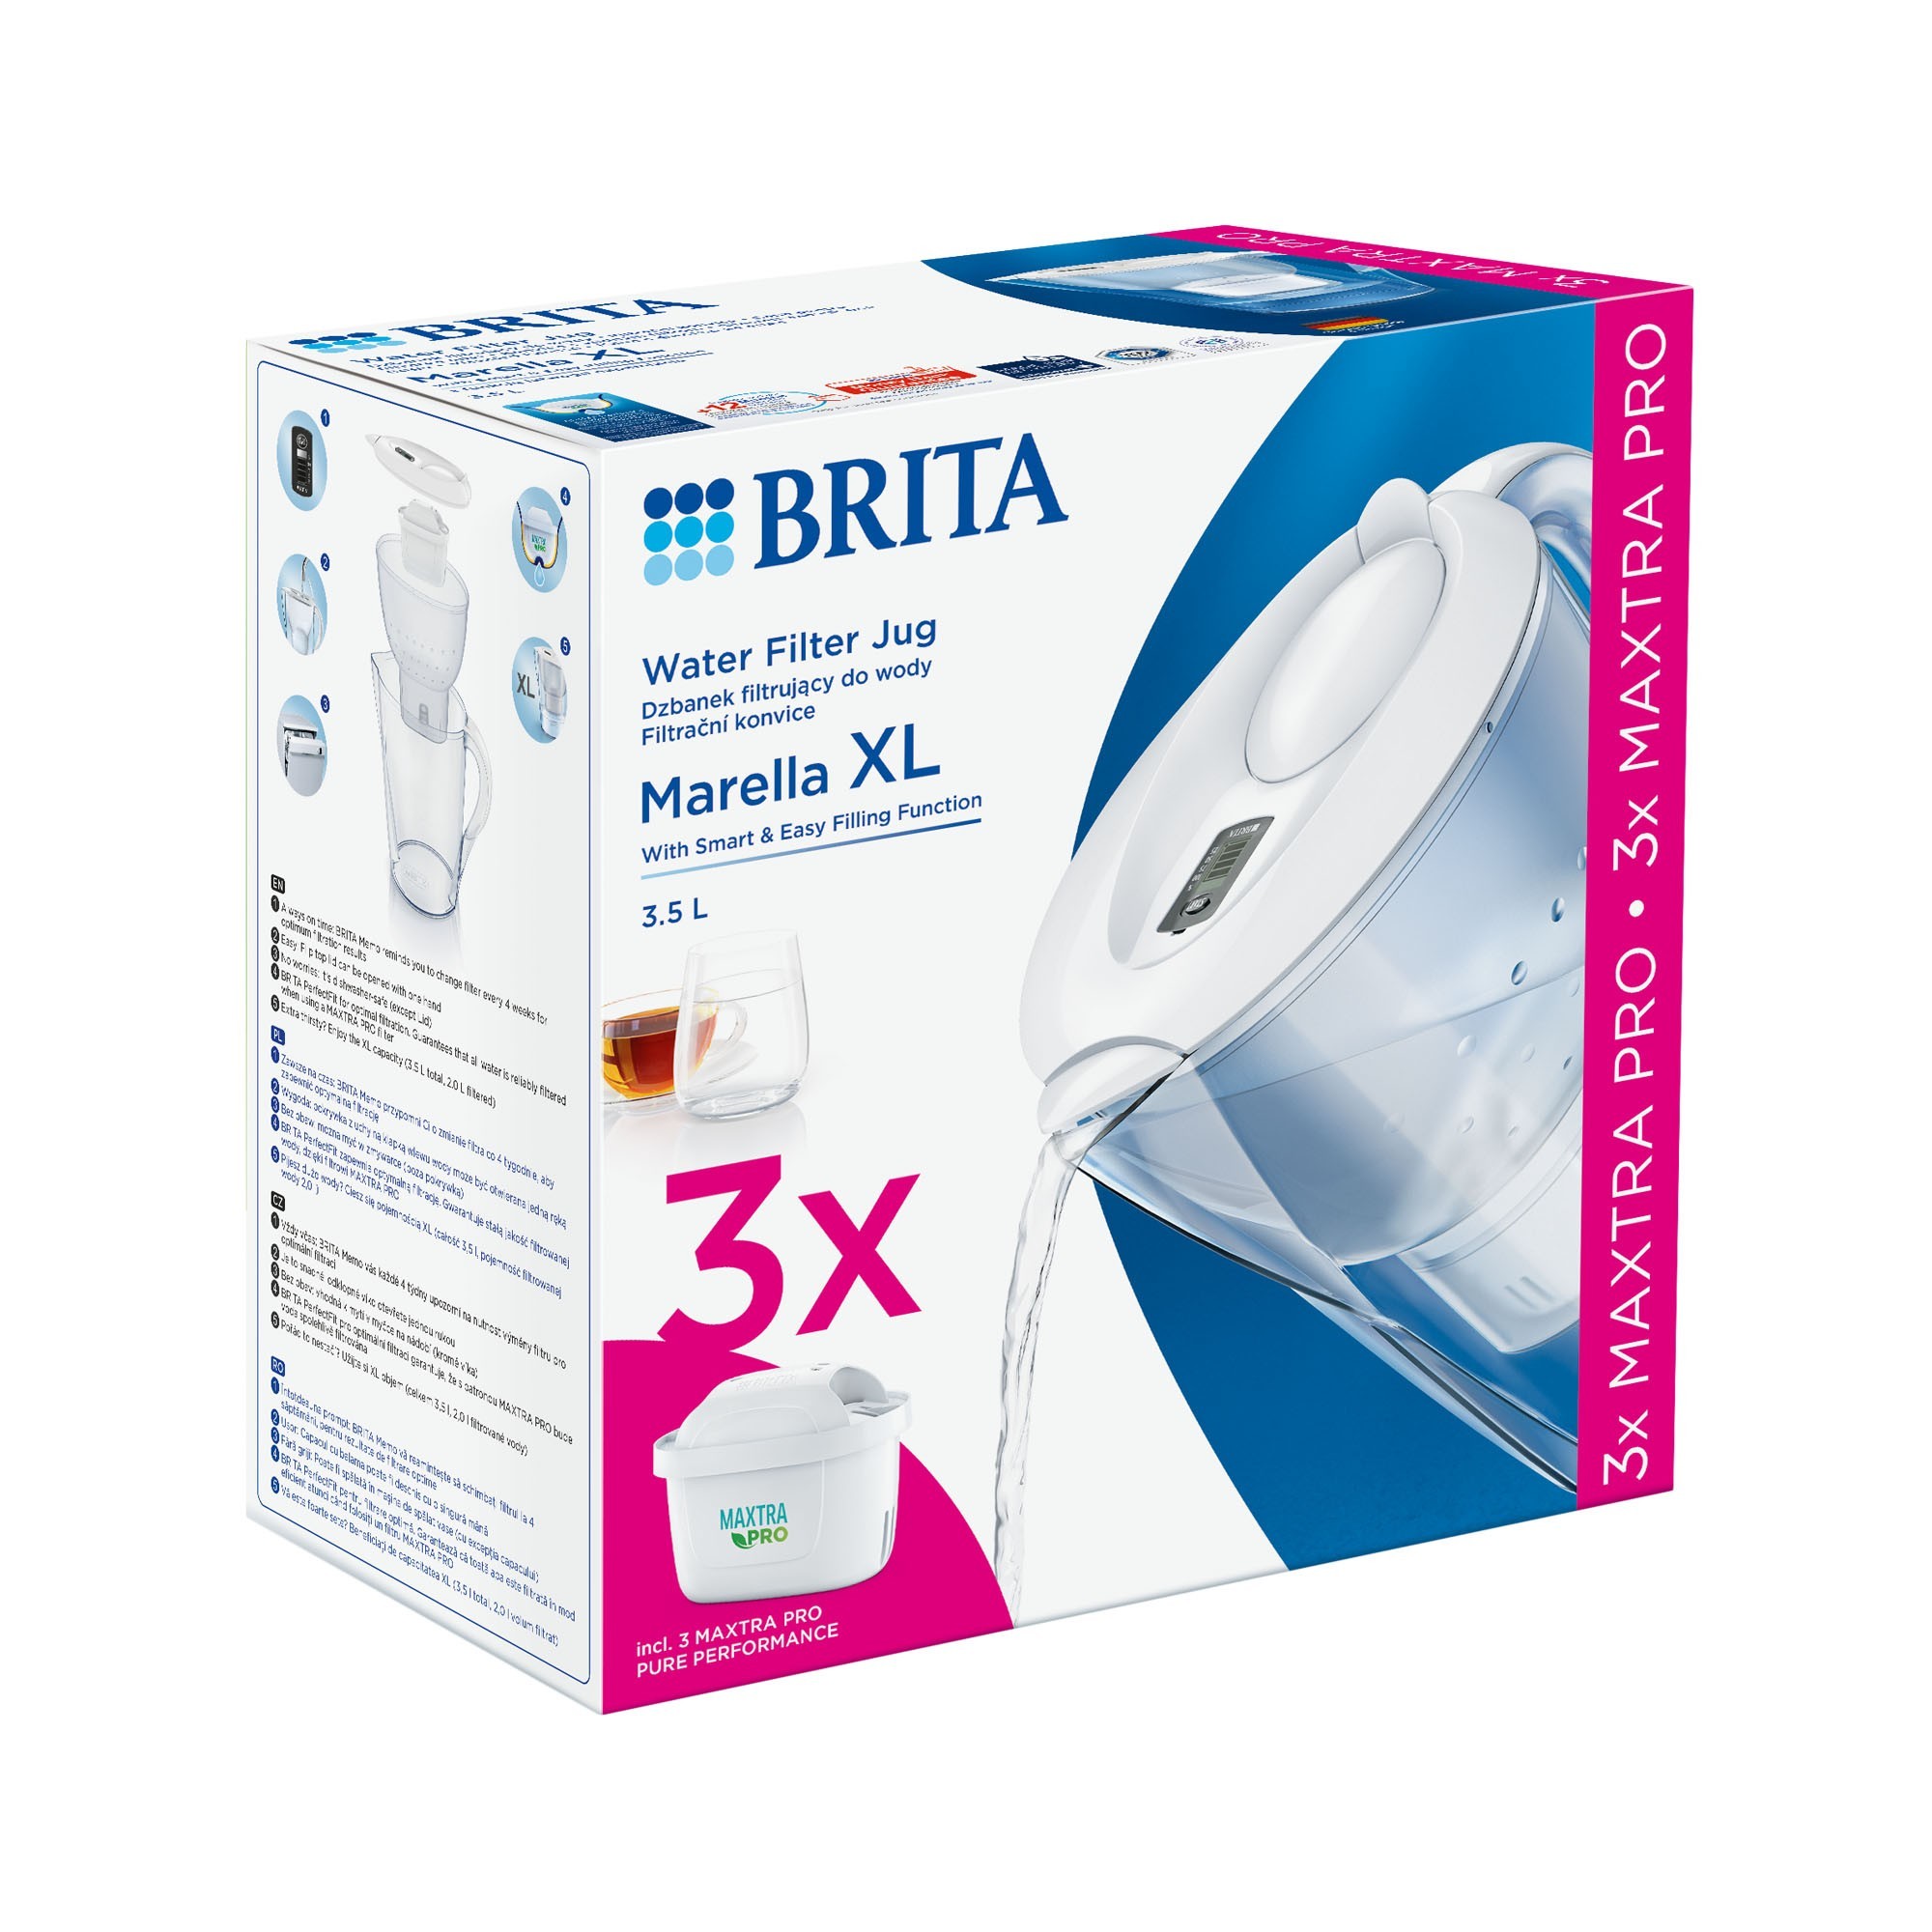 Brita Marella Cool Memo White 3x Maxtra+ - Filter Kettle